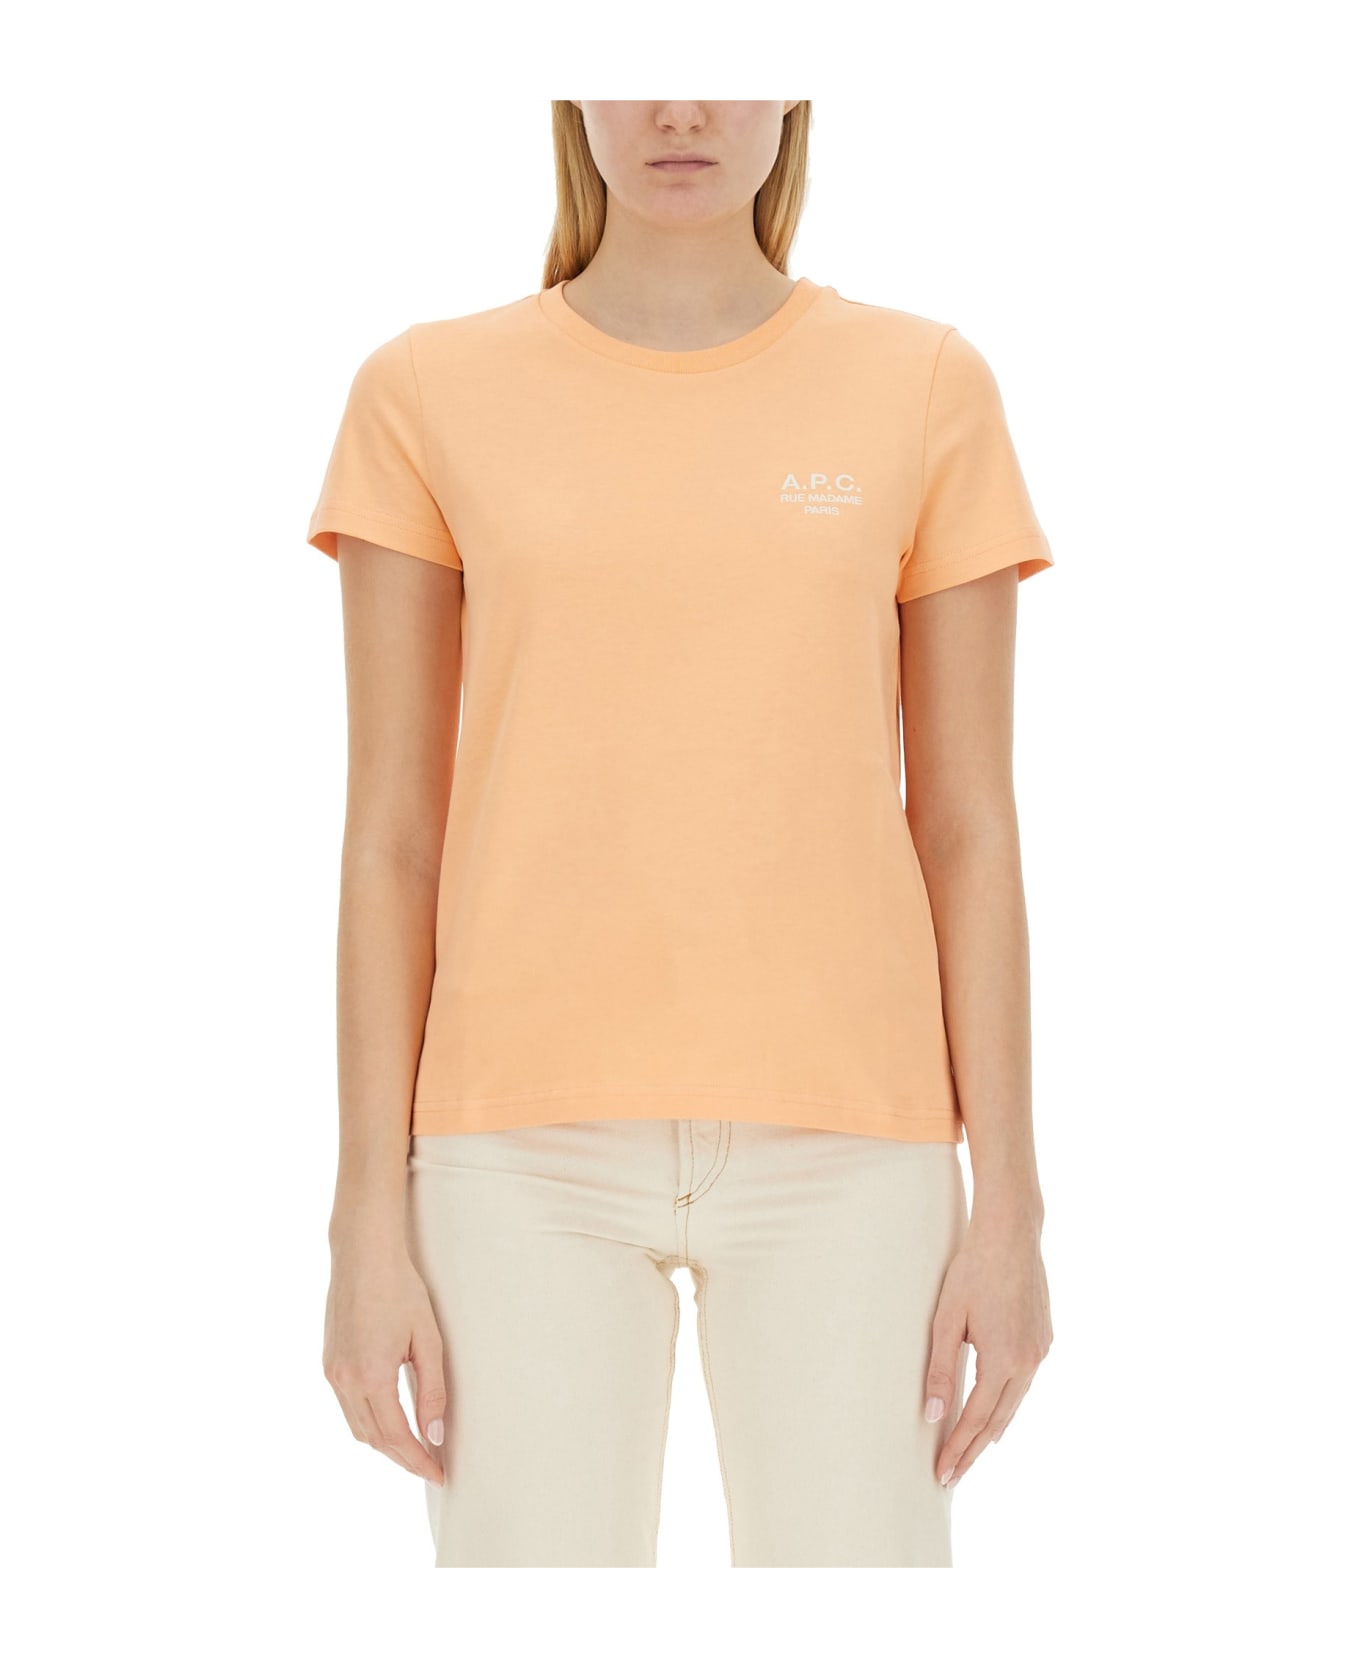 A.P.C. T-shirt With Logo - Ead Peach Tシャツ